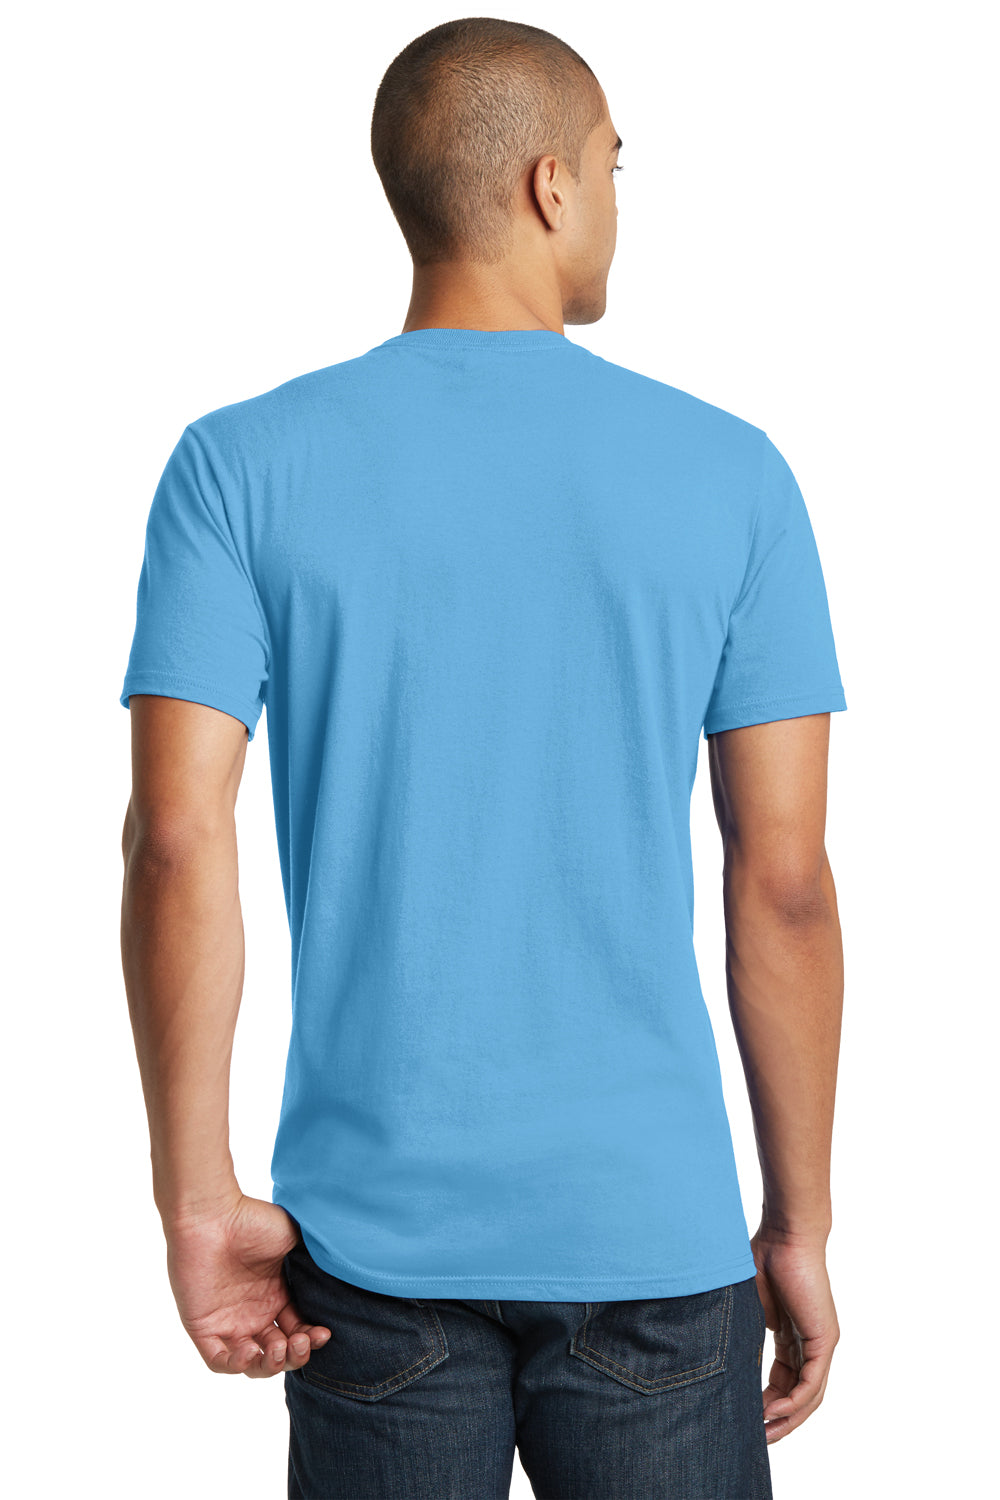 District DT5000 Mens The Concert Short Sleeve Crewneck T-Shirt Aqua Blue Back